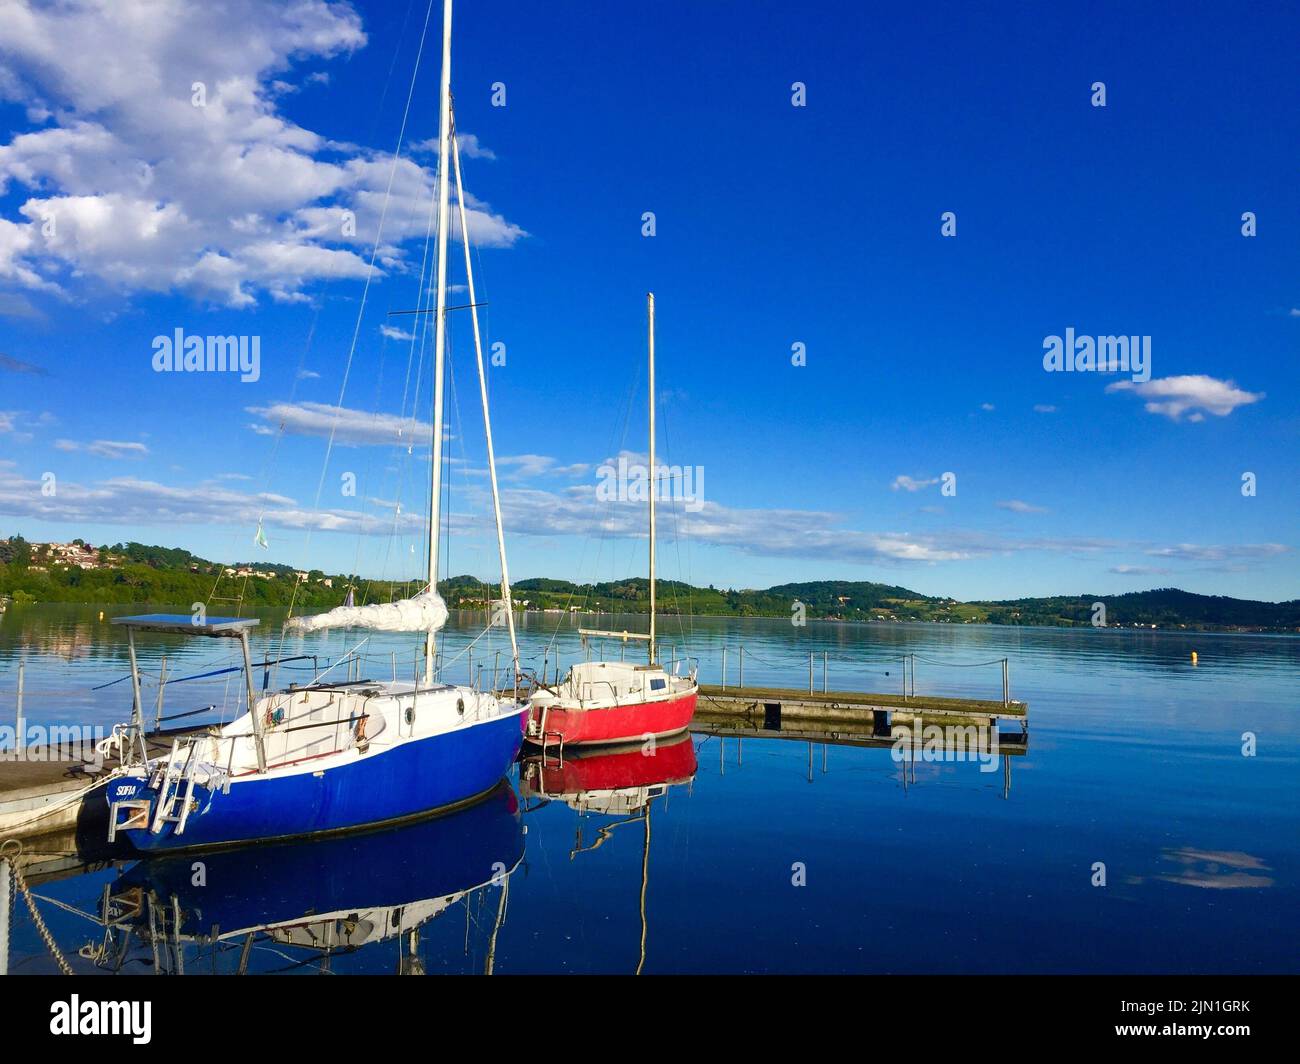 Vista delle barche da pesca ormeggiate al porto turistico nelle giornate di sole in baia sul lago di Viverone con riflessi sulla superficie dell'acqua Foto Stock